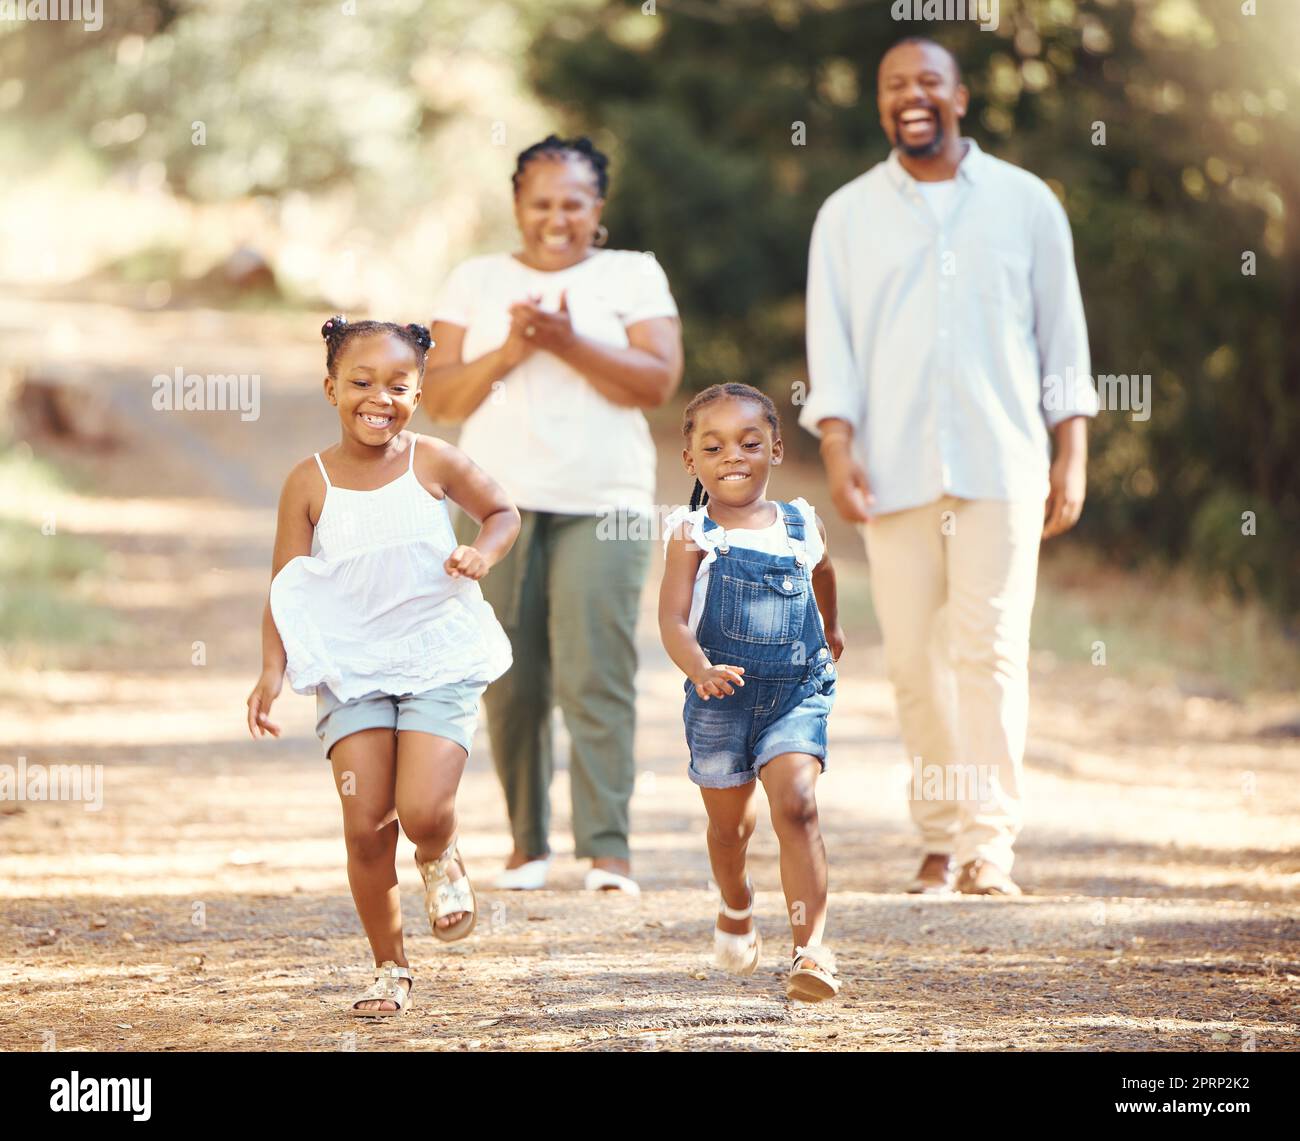 Glückliche, schwarze Familie und Kinder laufen im Sommer im Naturpark, während mom und Dad ihre kleinen afrikanischen Kinder anfeuern. Spielen, Lifestyle und aktive Eltern, die mit ihren gesunden Mädchen in einem Wald wandern Stockfoto